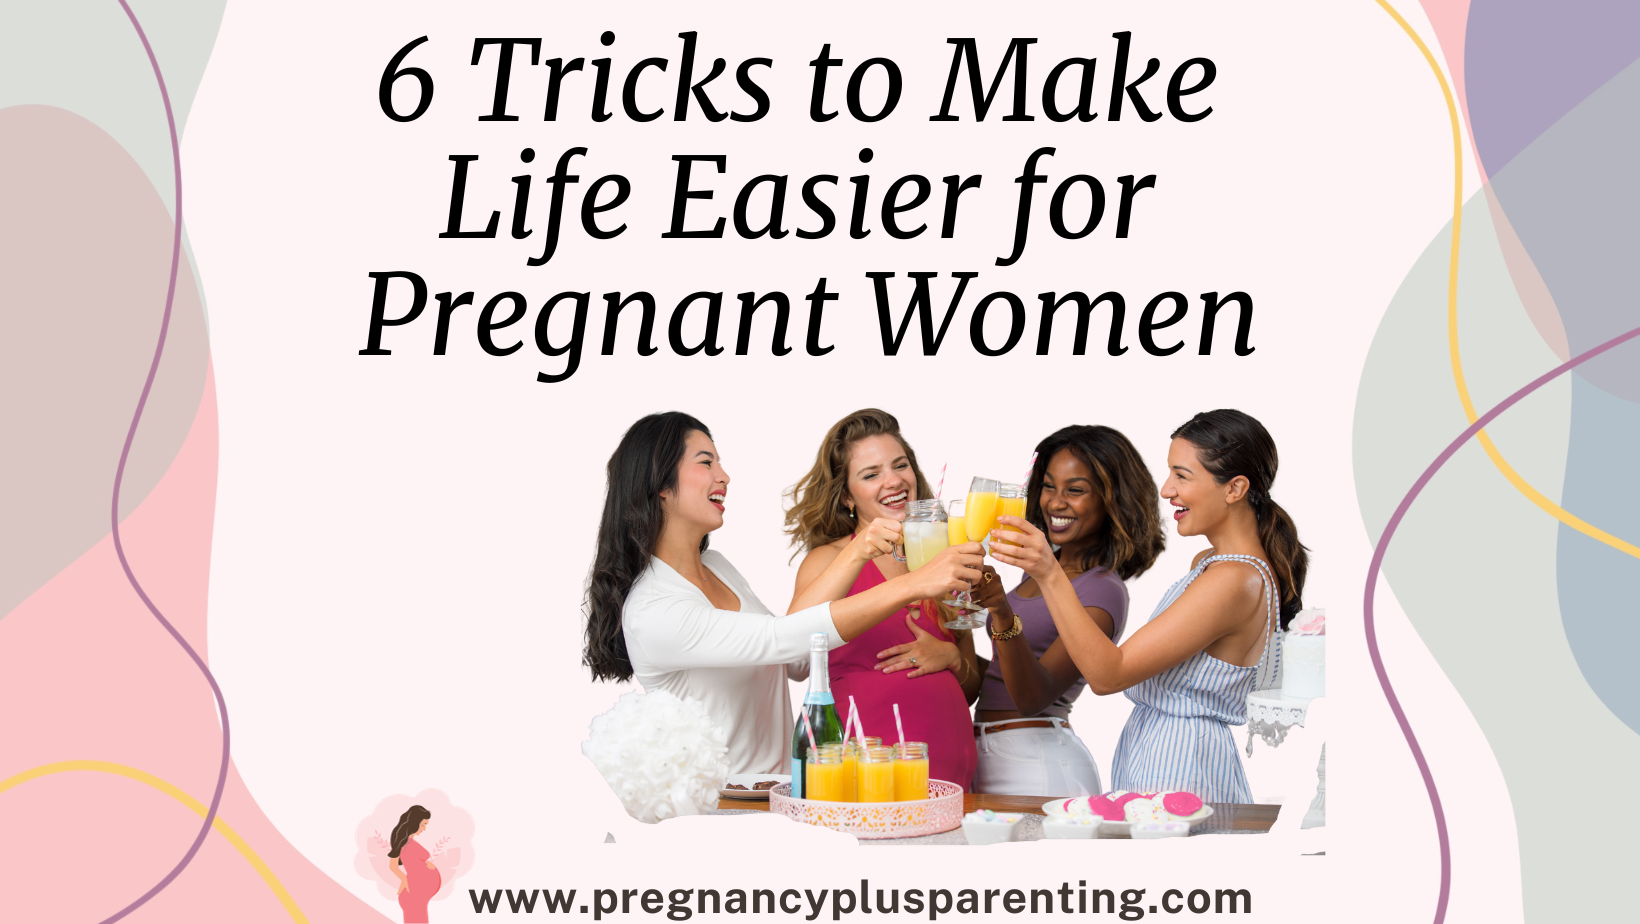 6 Tricks to Make Life Easier for Pregnant Women